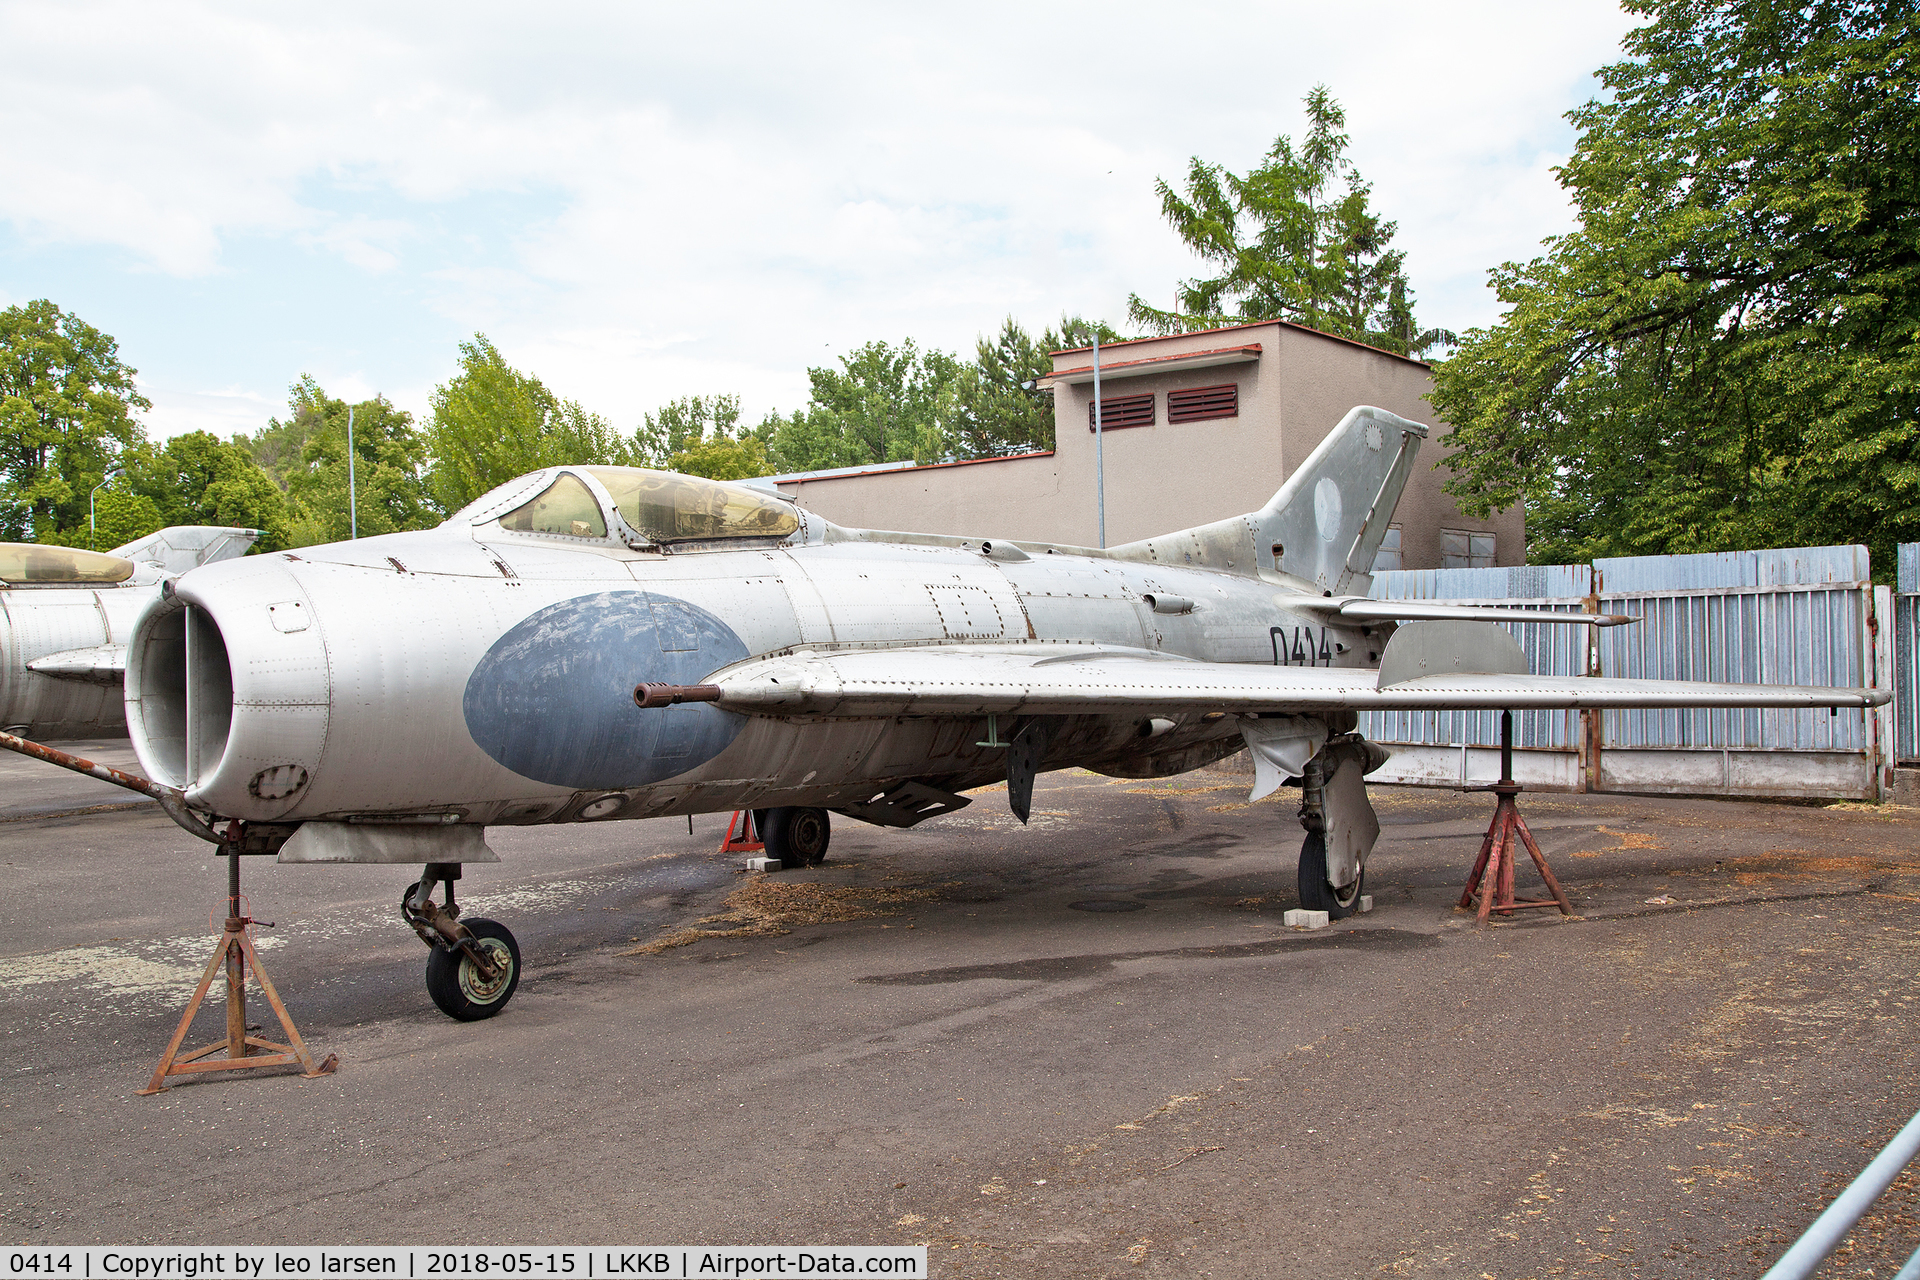 0414, 1961 Aero S-105 (MiG-19S) C/N 150414, Kebly Air Museum 15.5.2018.In service between 1961-70